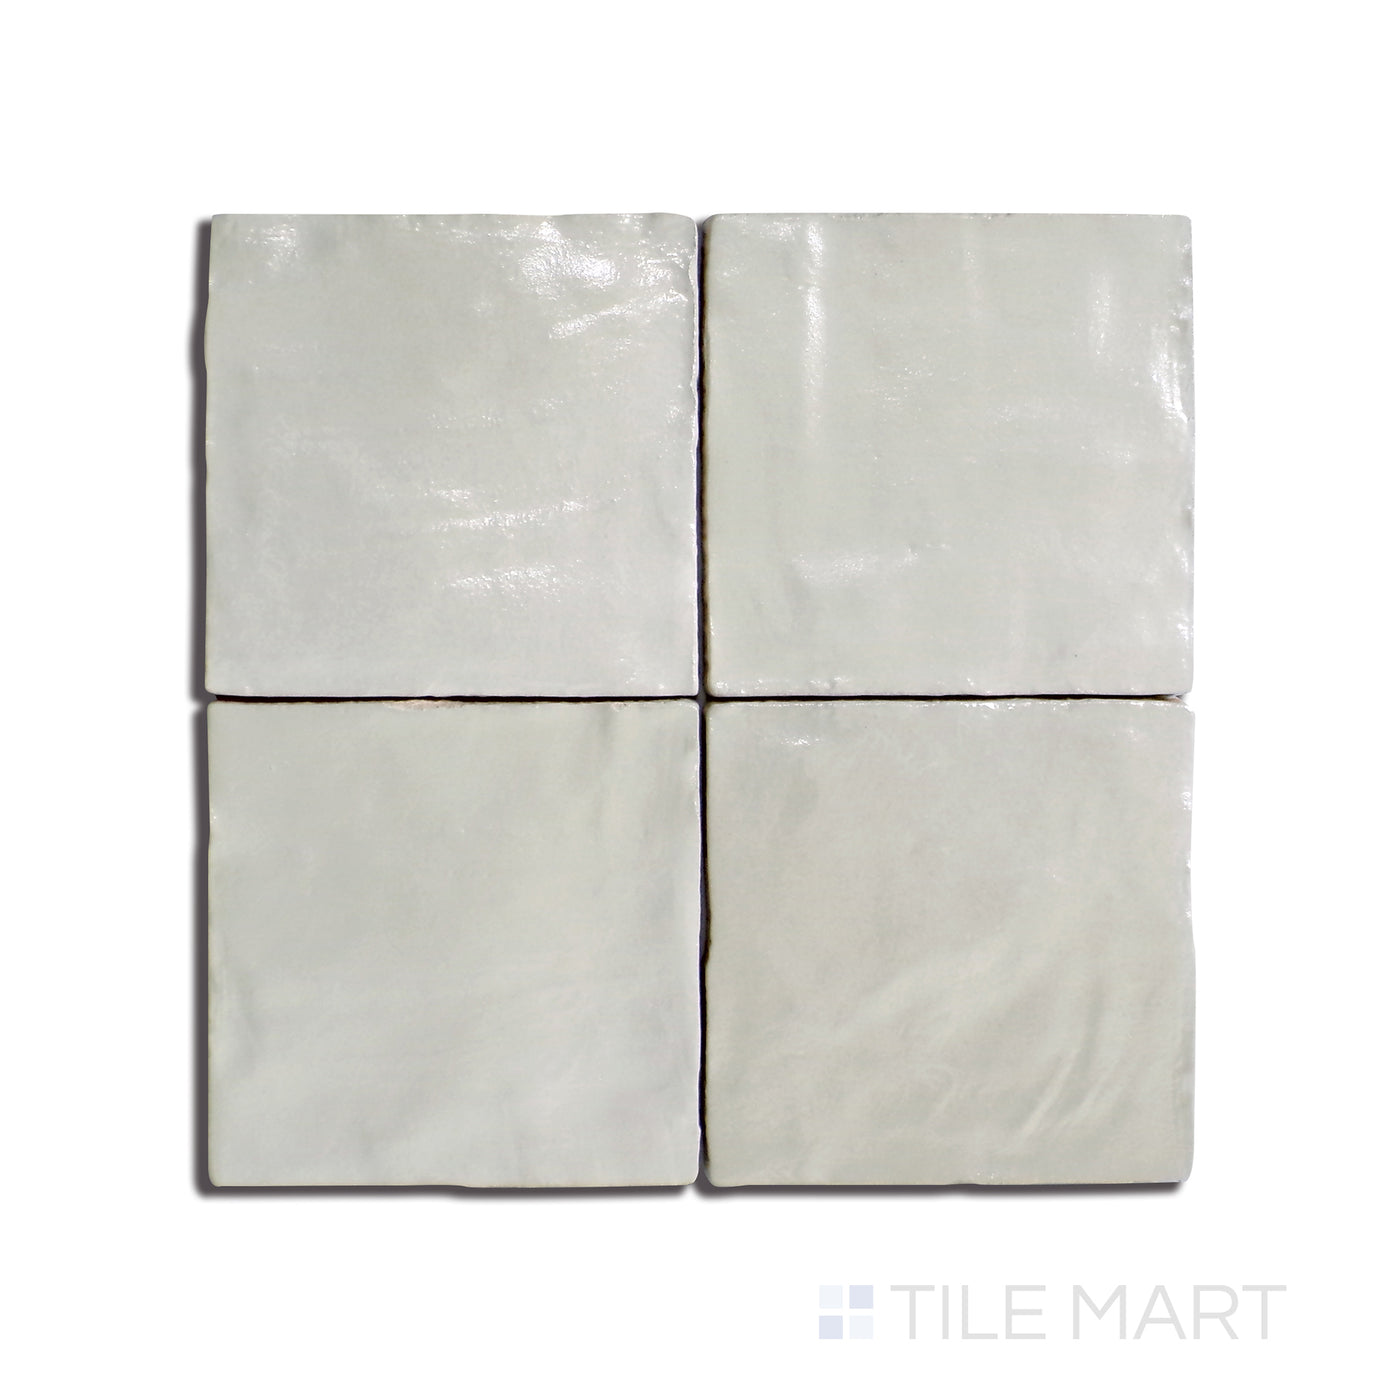 Mallorca Ceramic Field Tile 4X4 Green Matte